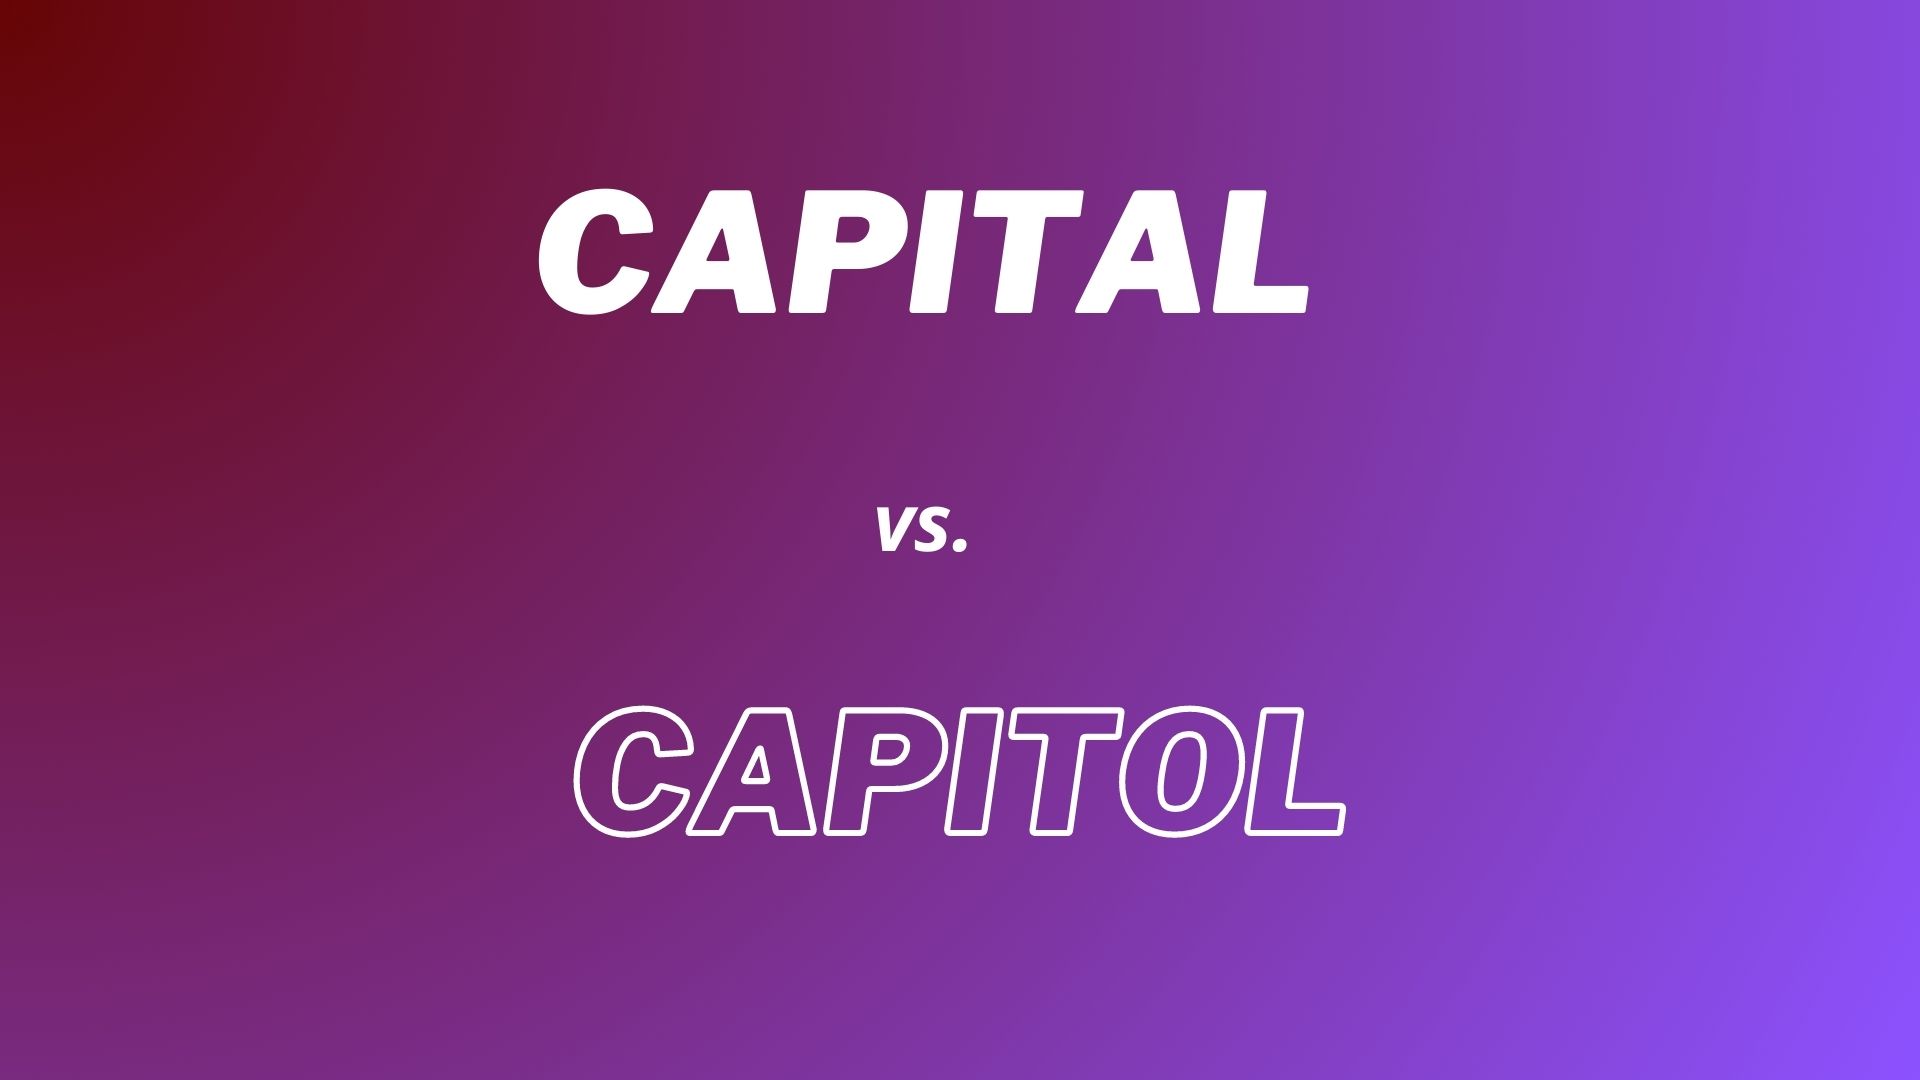 Definições completas das palavras em inglês "Capital" e "Capitol" com explicações das diferenças: